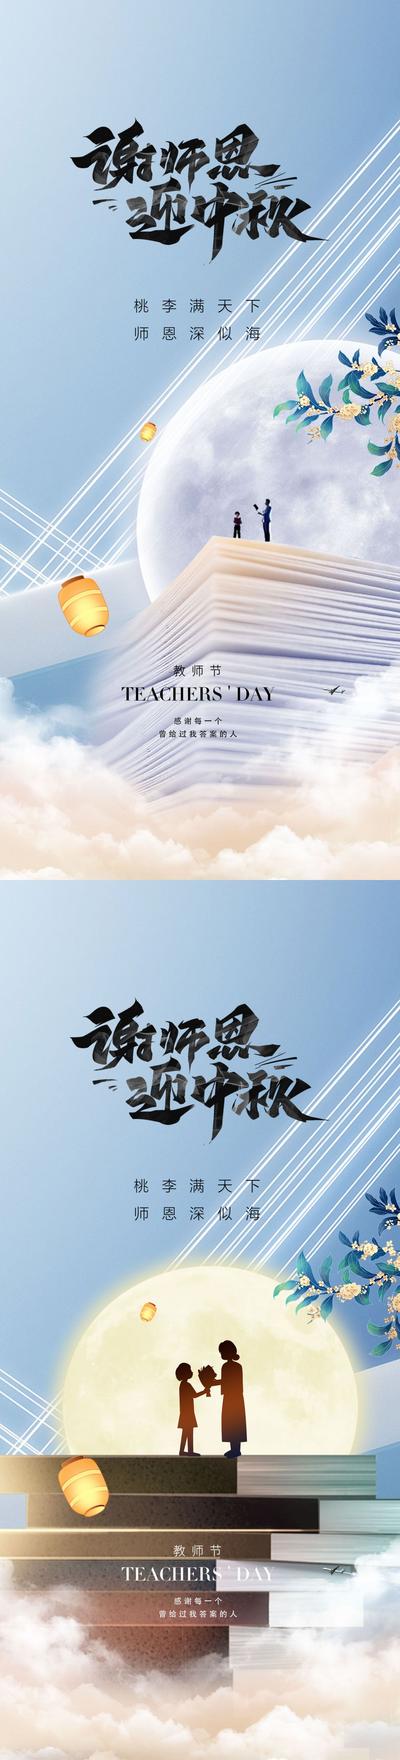 南门网 教师节中秋节海报